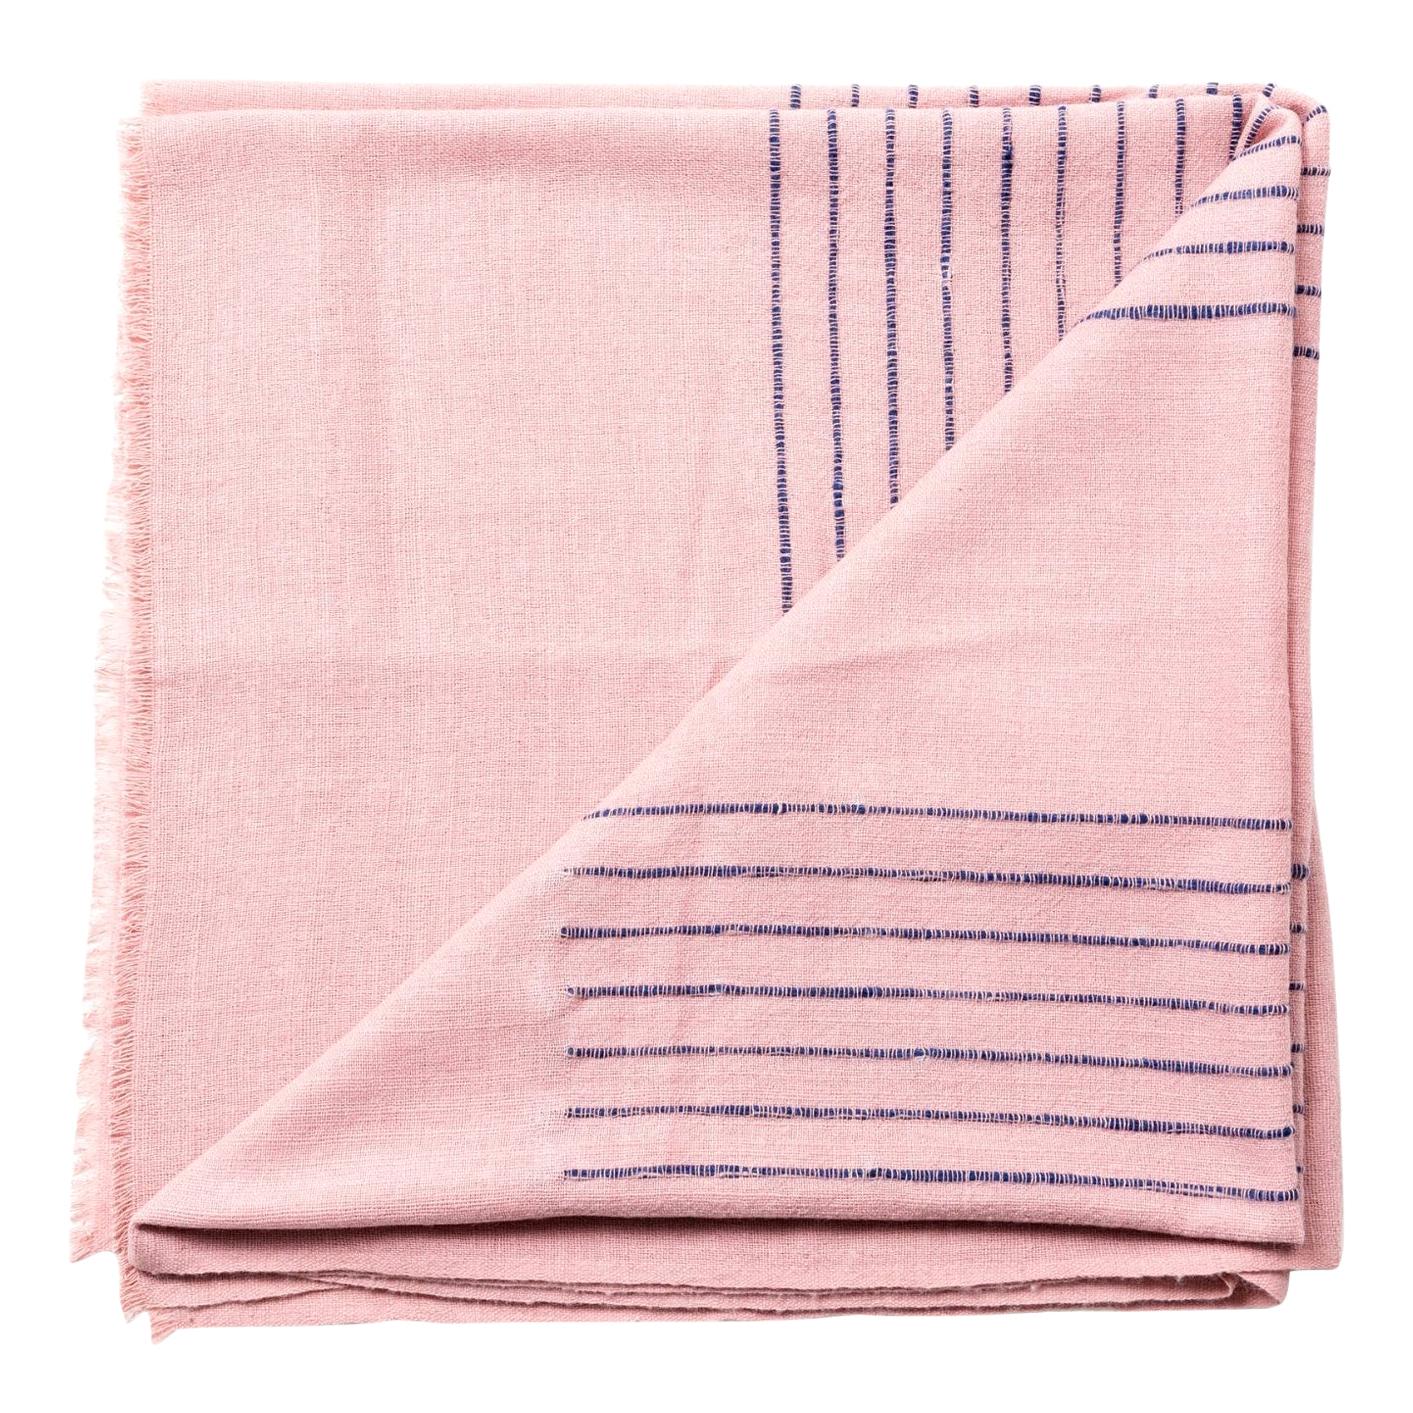 Rosewood Dusty Pink Handloom Queen Size Bedspread Coverlet  in Stripe Design